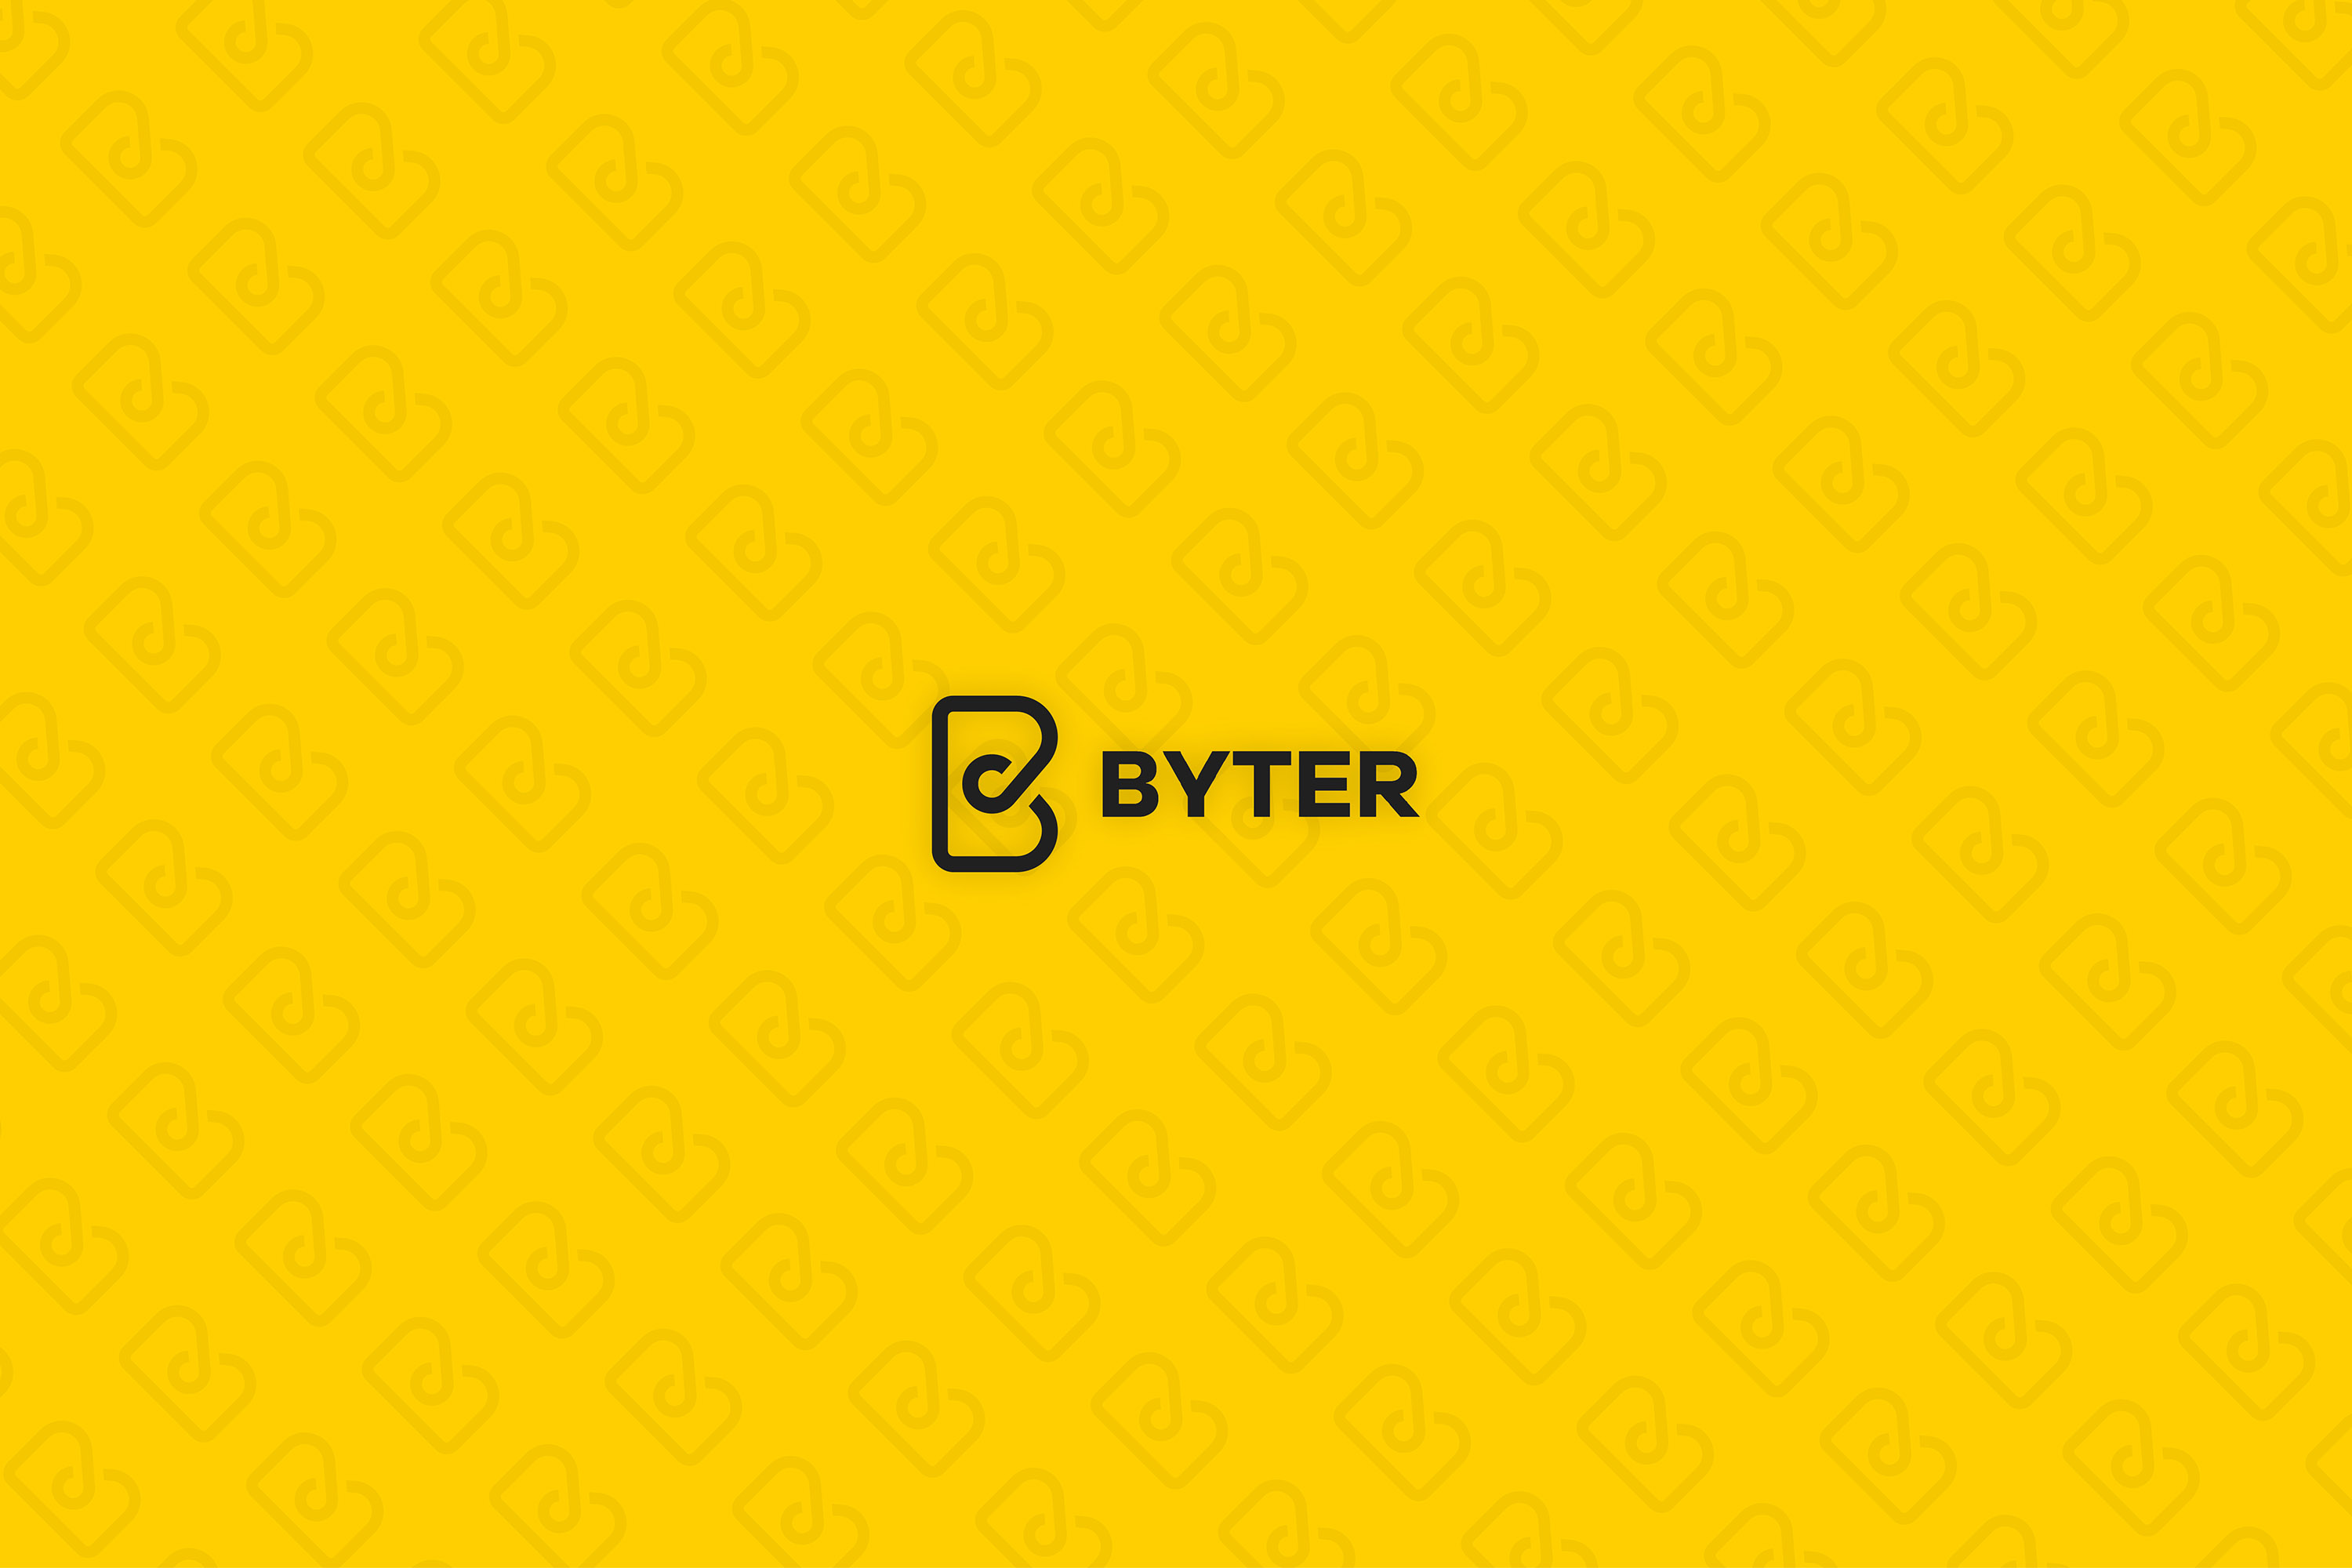 Byter Agency Web Interface